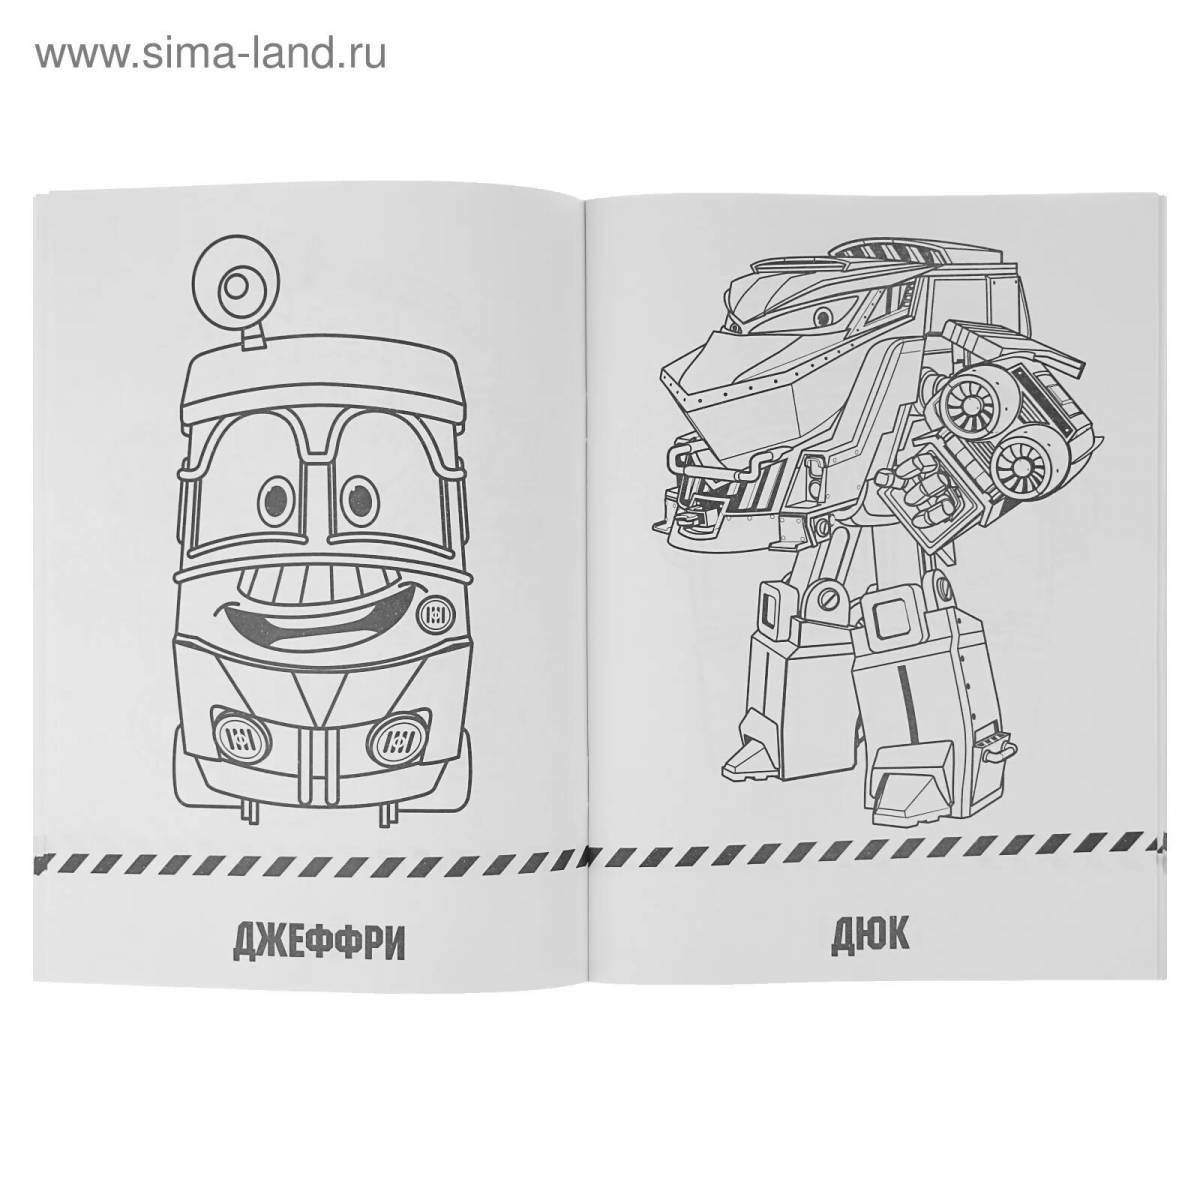 Coloring book cute maxi train robots